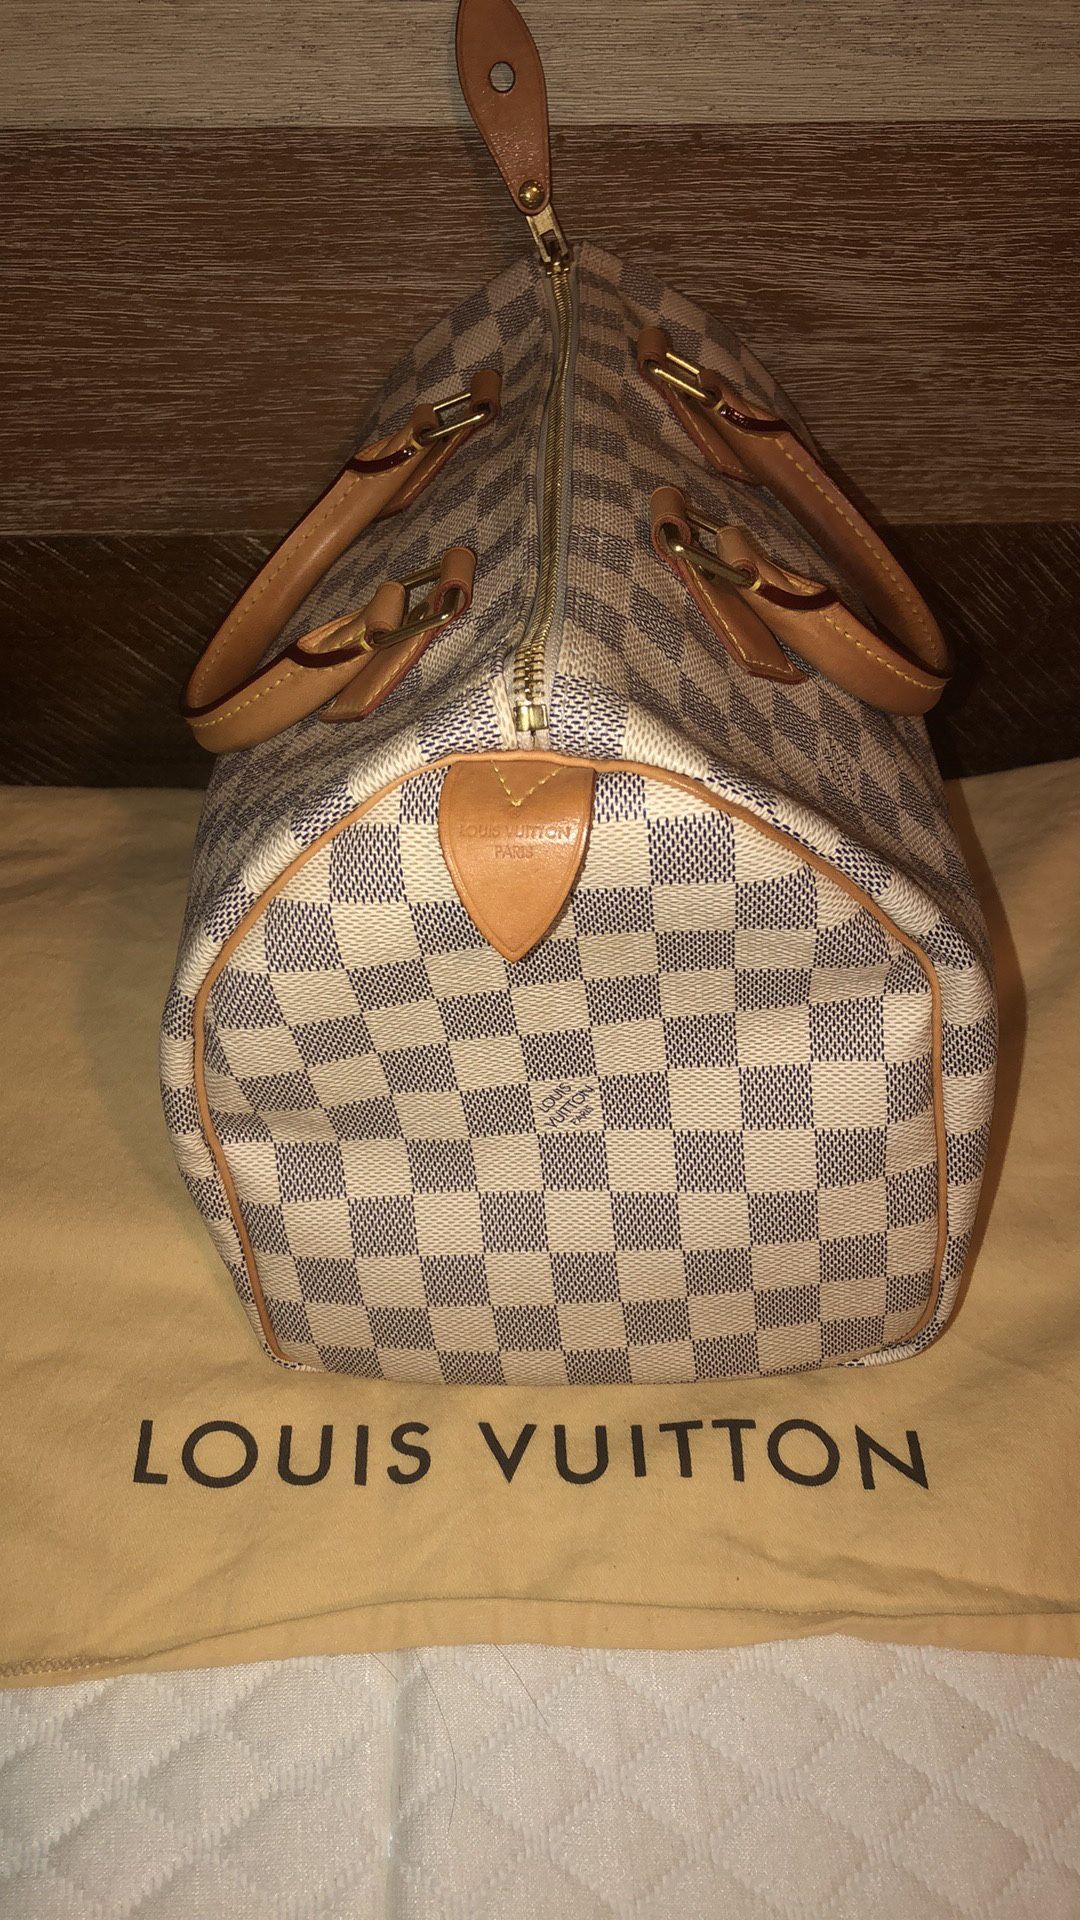 Louis Vuitton Speedy 30 for Sale in San Antonio, TX - OfferUp